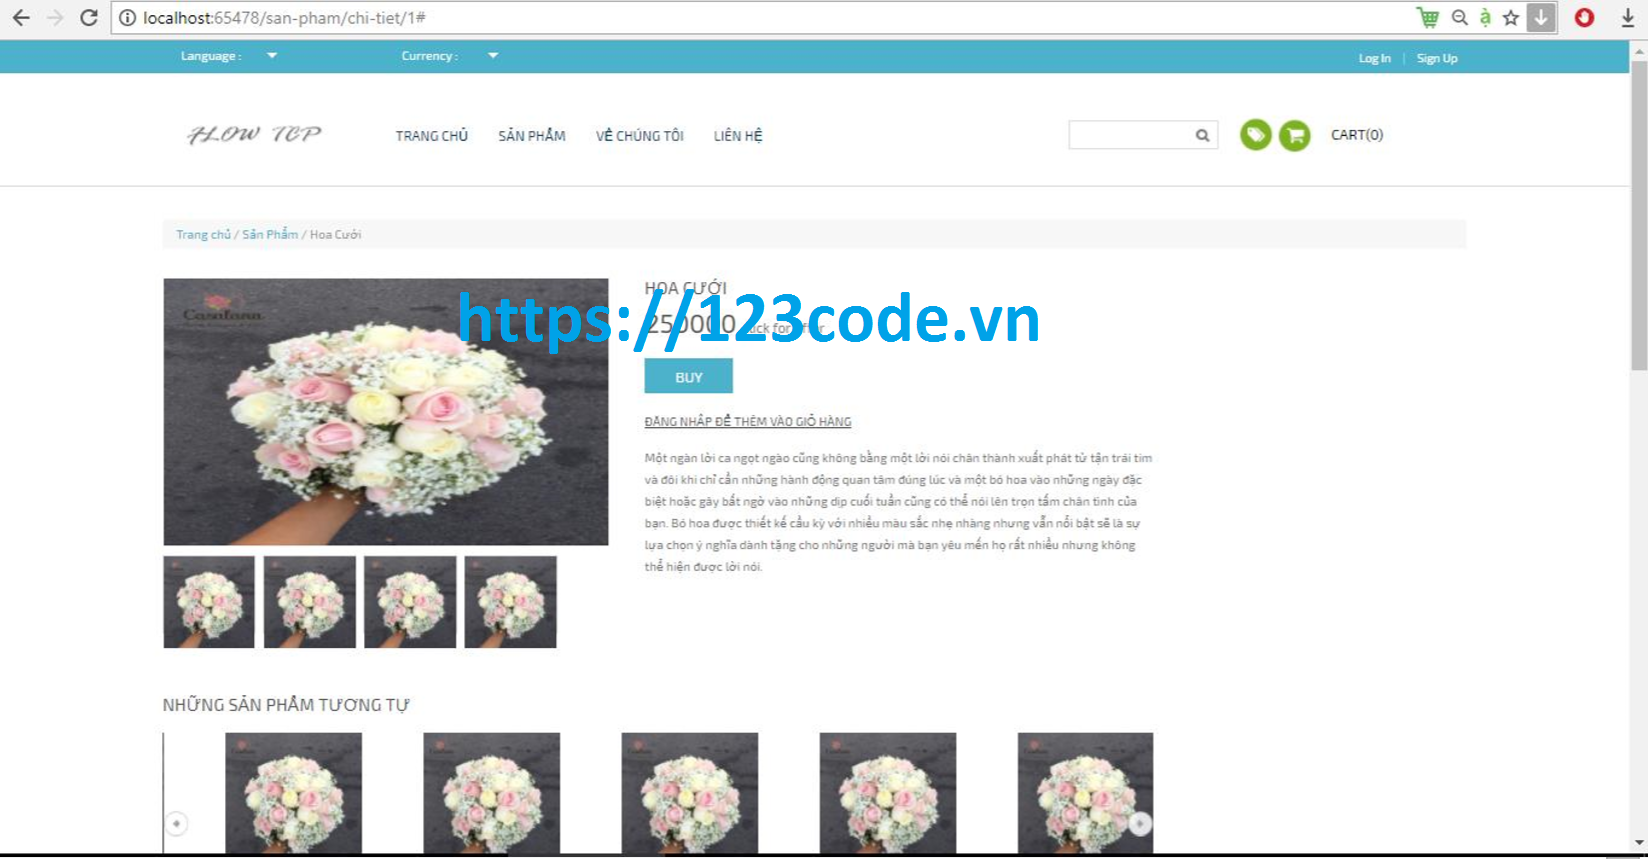 Share source code website bán hoa online asp.net full báo cáo và data